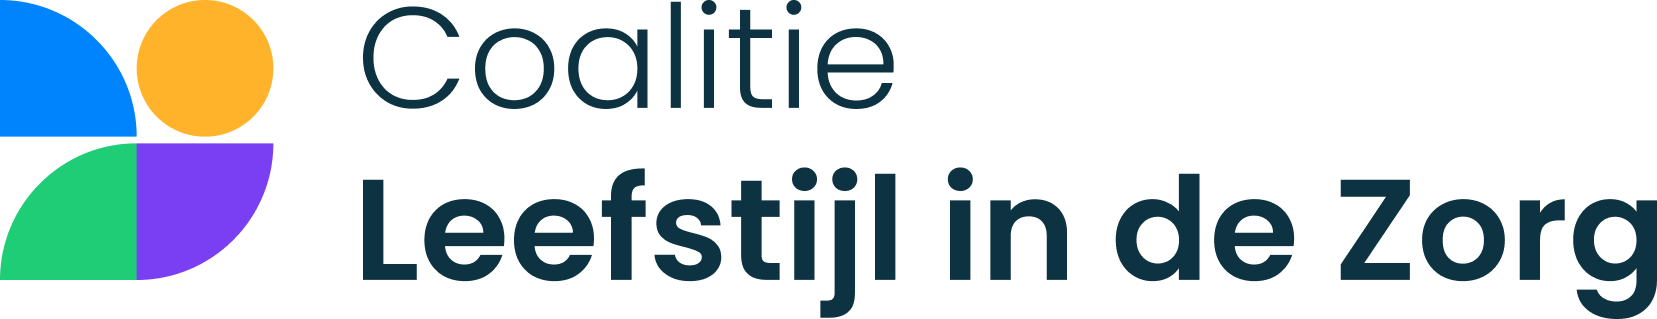 Leefstijlcoalitie logo